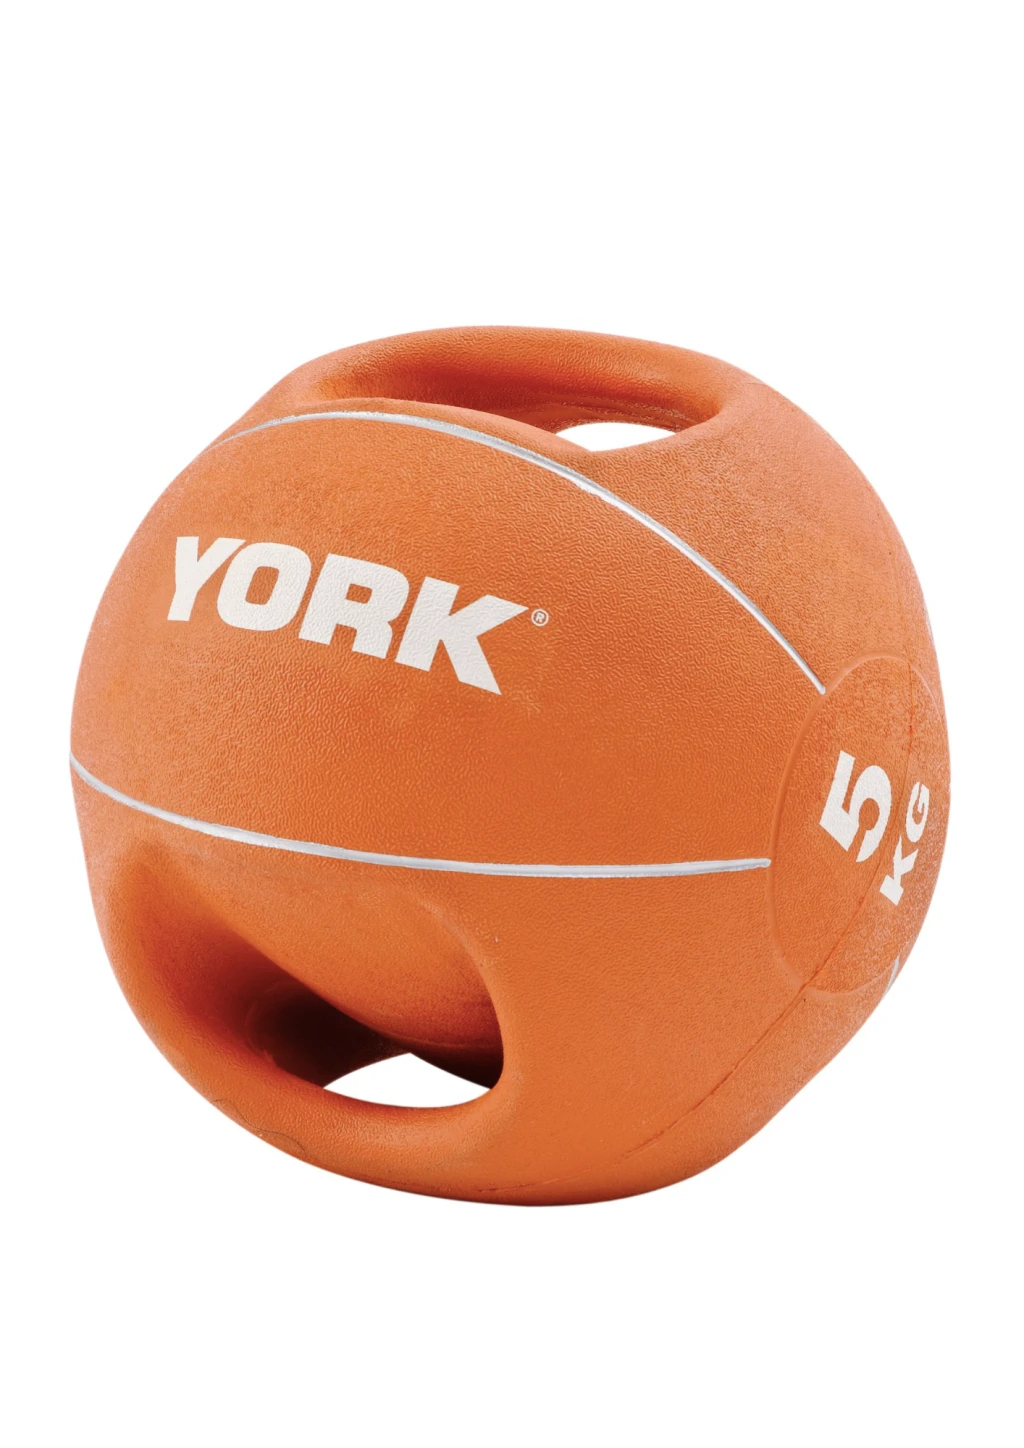 Мяч медбол 5 кг York Fitness с двумя ручками, оранжевый